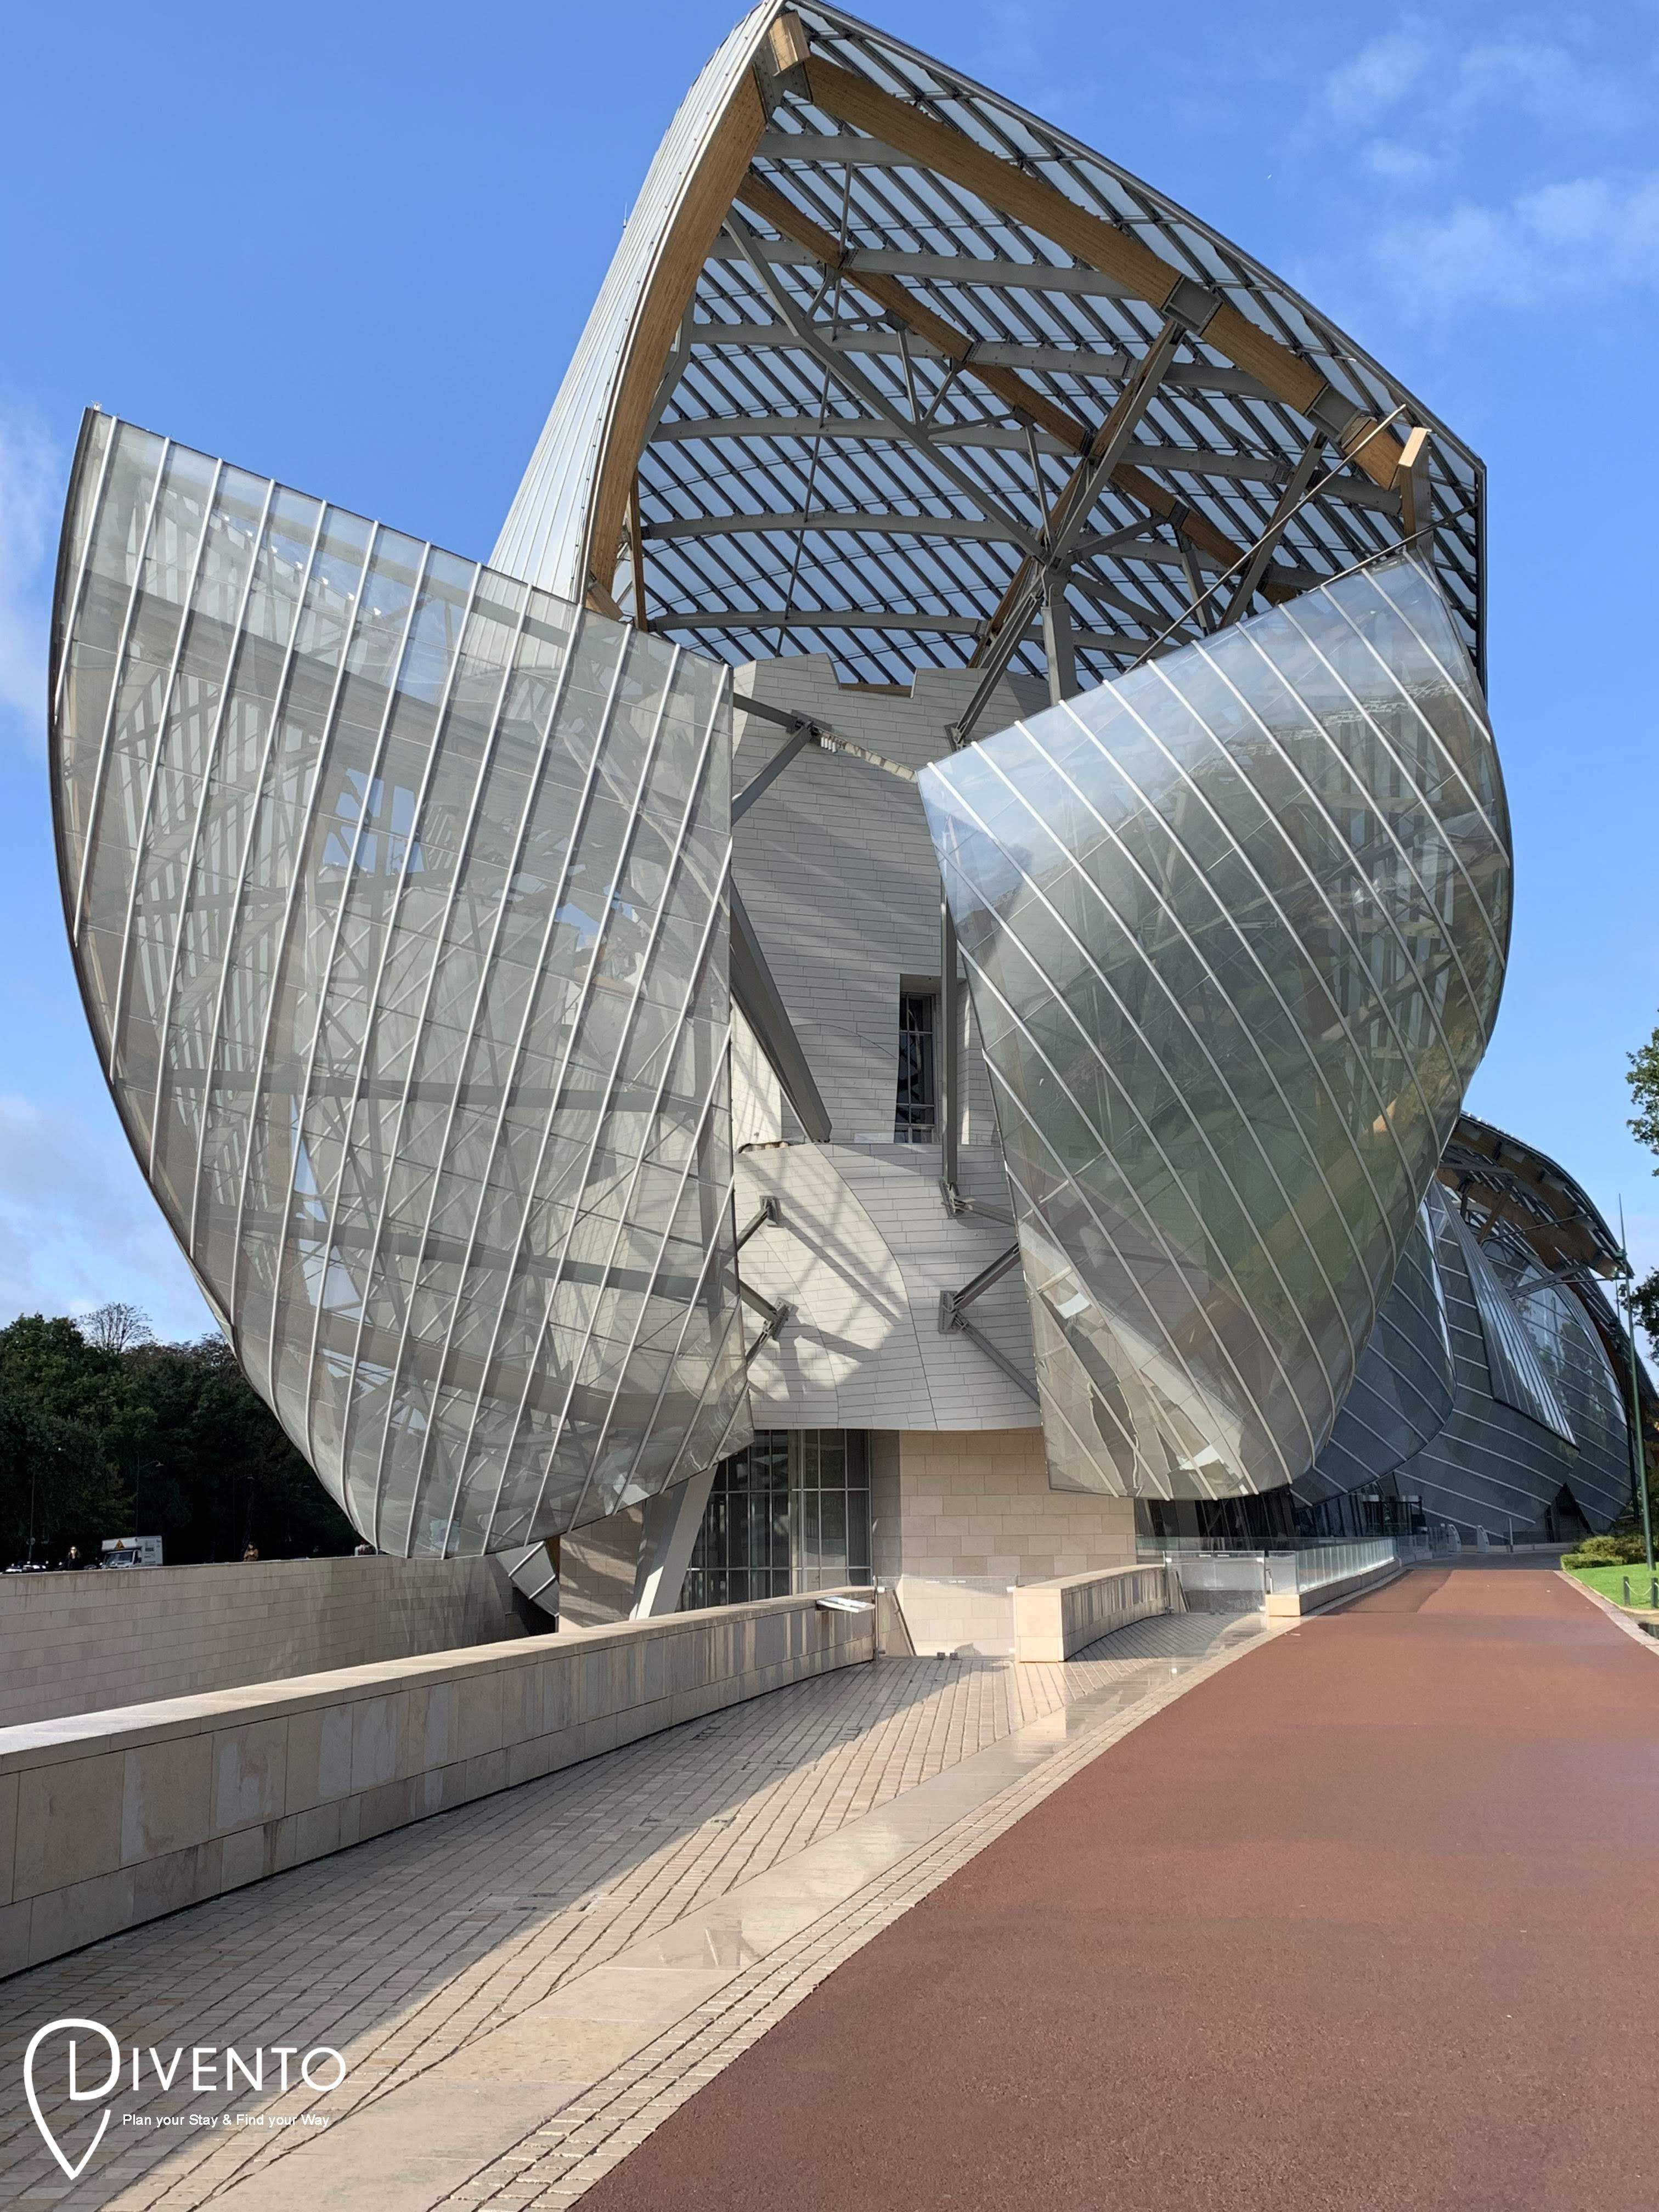 Fondation Louis Vuitton museum, Paris reviews